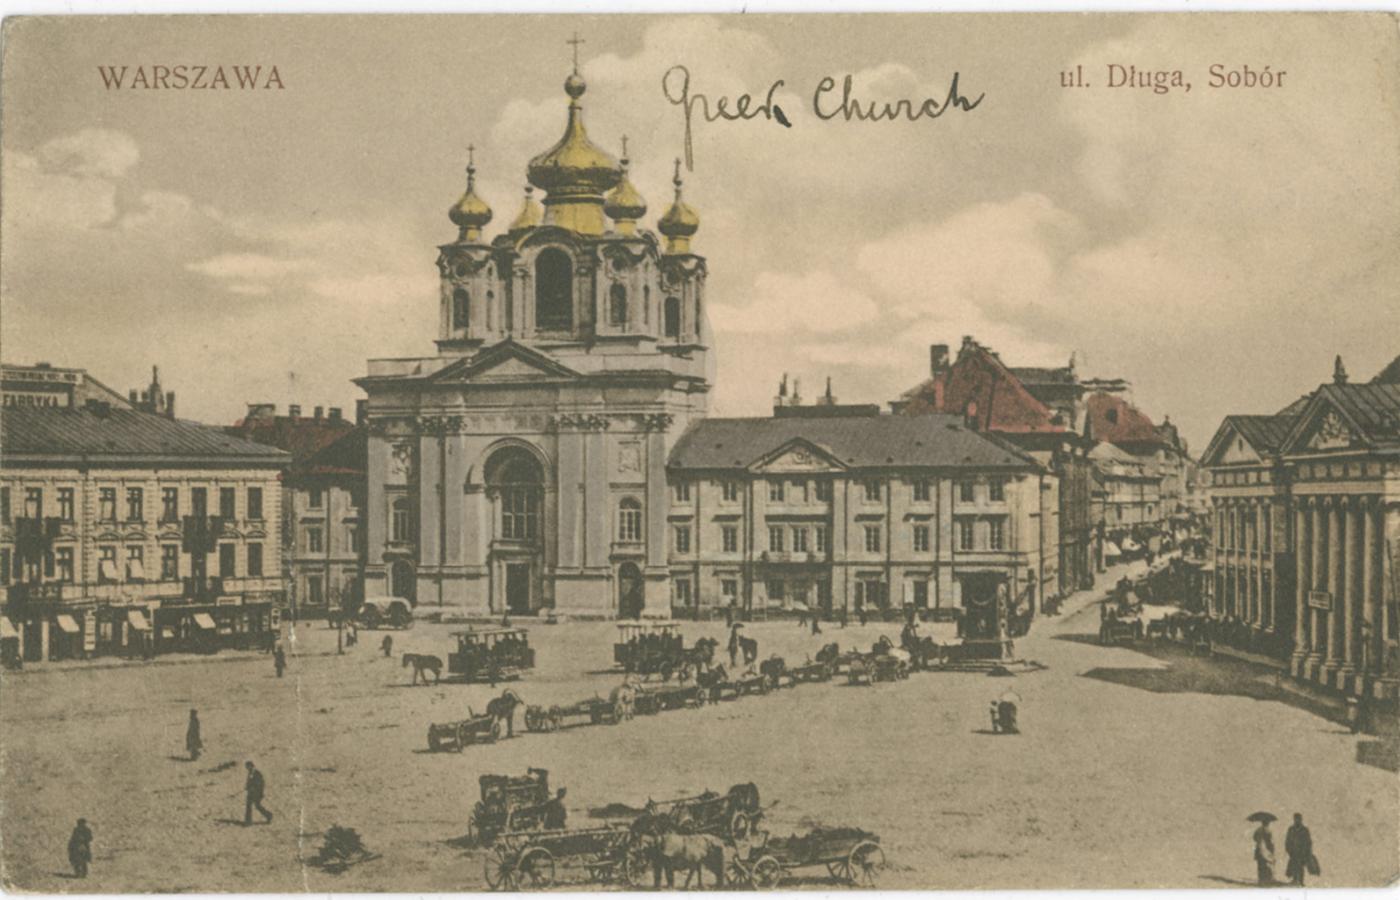 Cerkiew przy ulicy Długiej w Warszawie, zmieniona w katedrę polową WP.